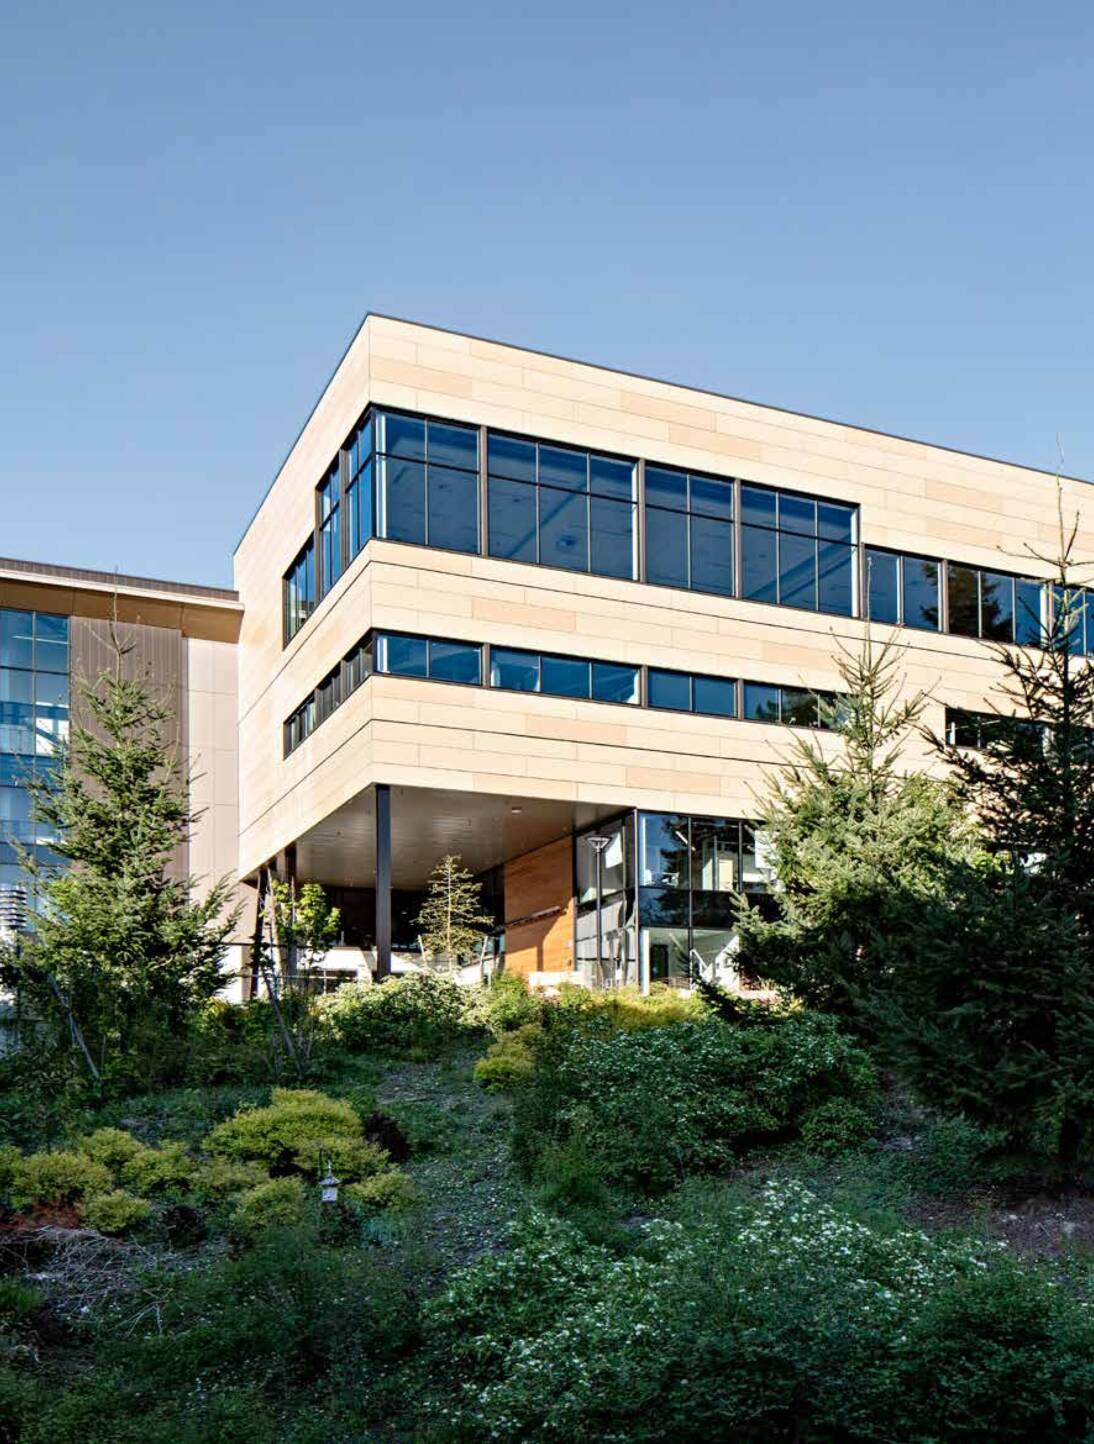 Bellevue Hochschule Studentenzentrum, Bellevue, Washington, USA